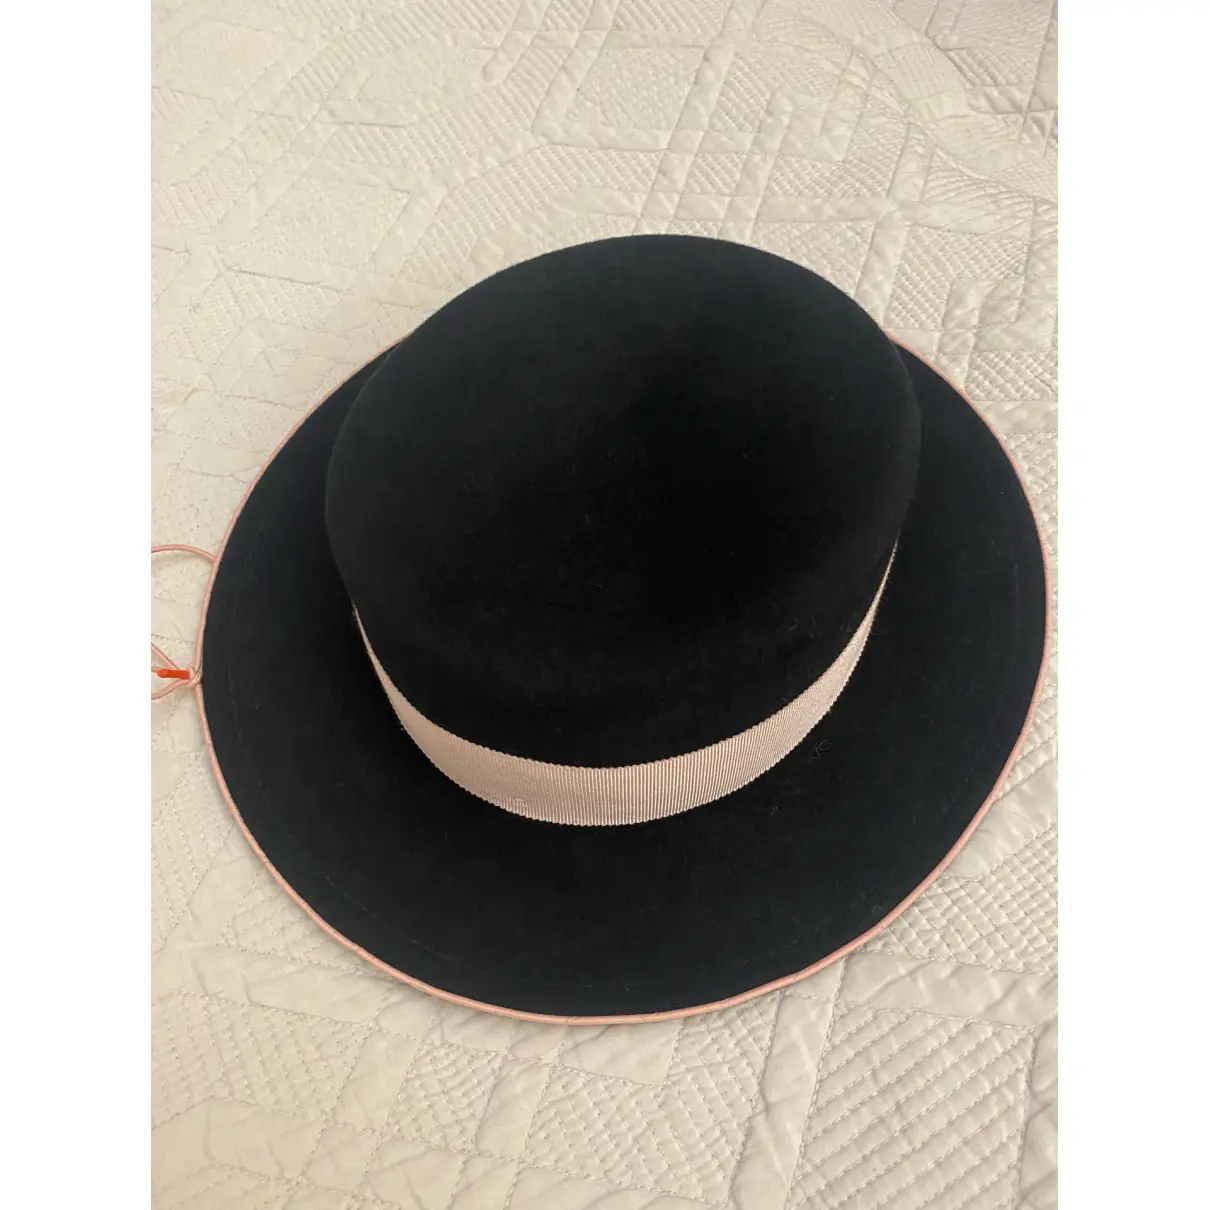 Buy Ruslan Baginskiy Cloth hat online